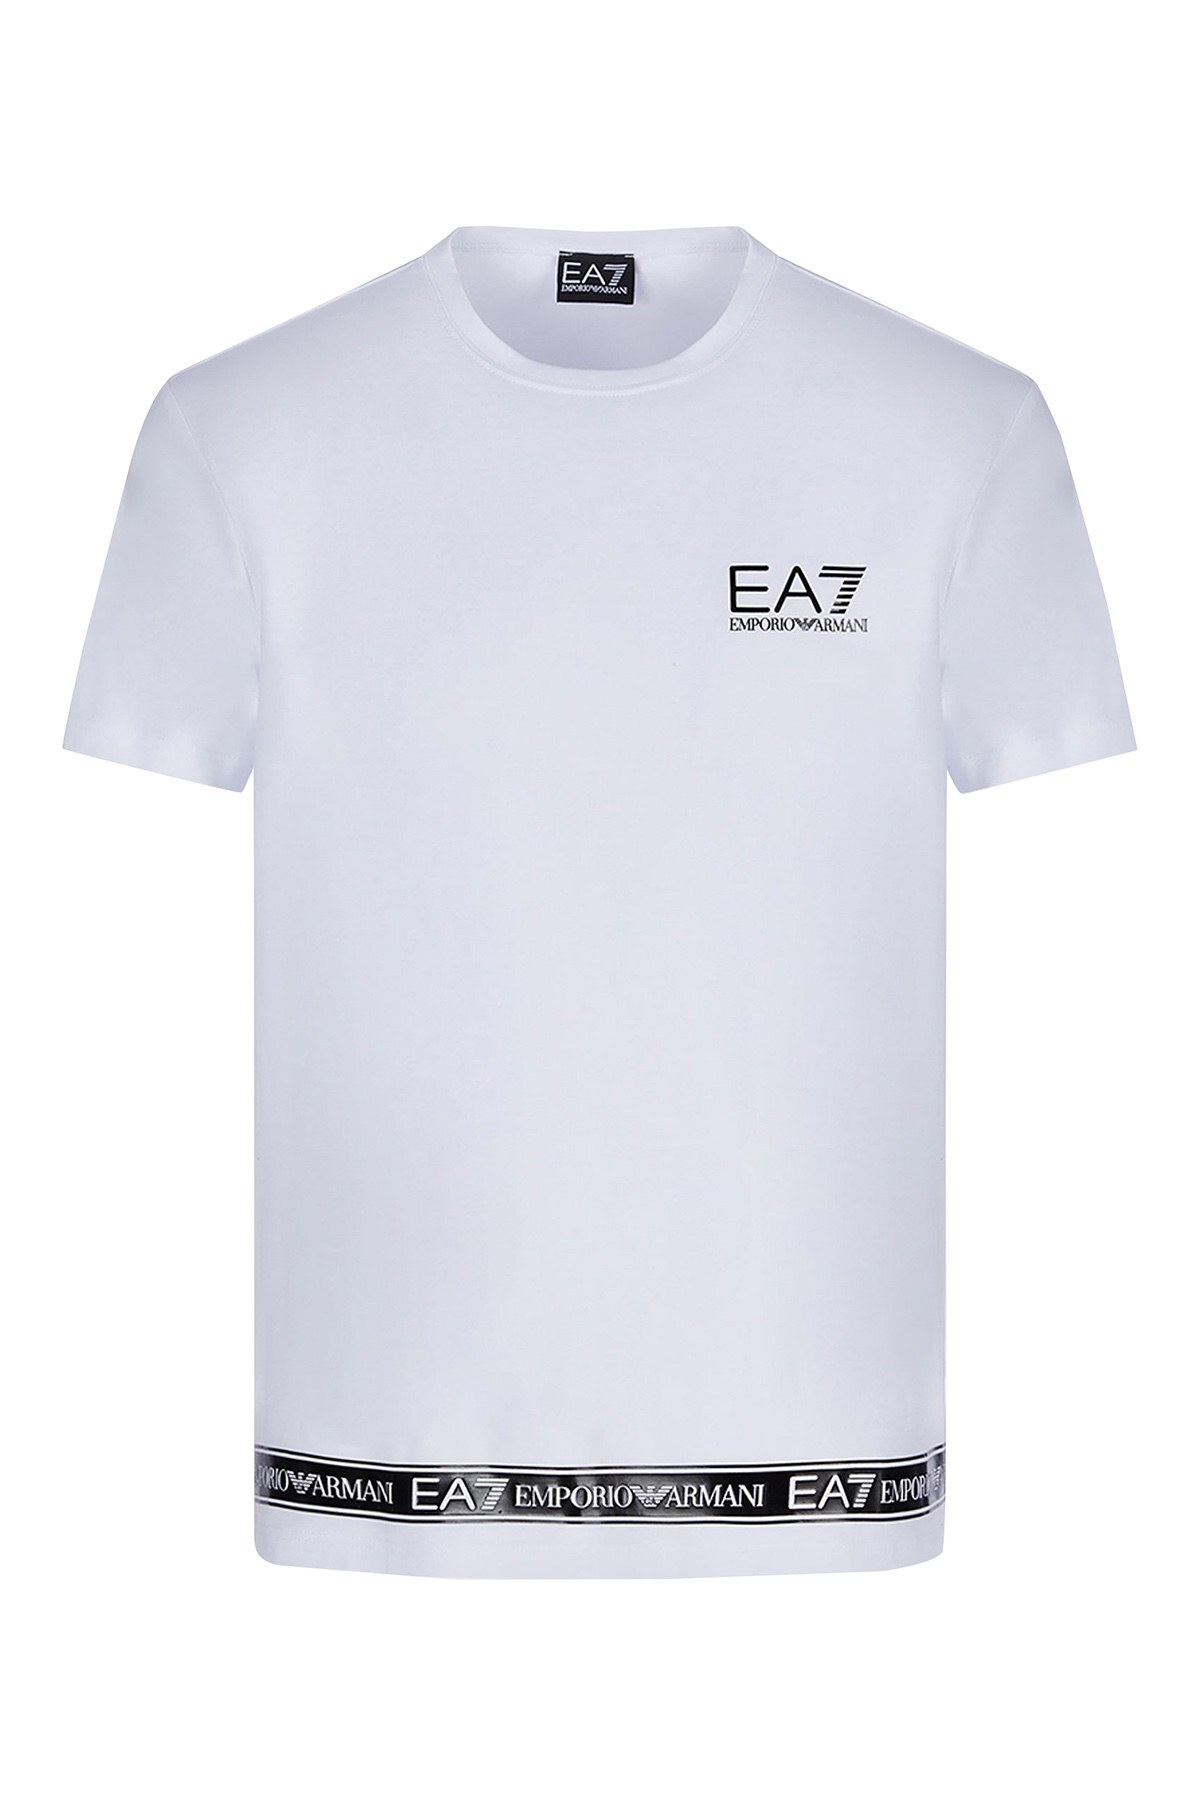 EA7 Logo Bantlı Bisiklet Yaka Pamuklu Erkek T Shirt S 3KPT05 PJ03Z 1100 BEYAZ